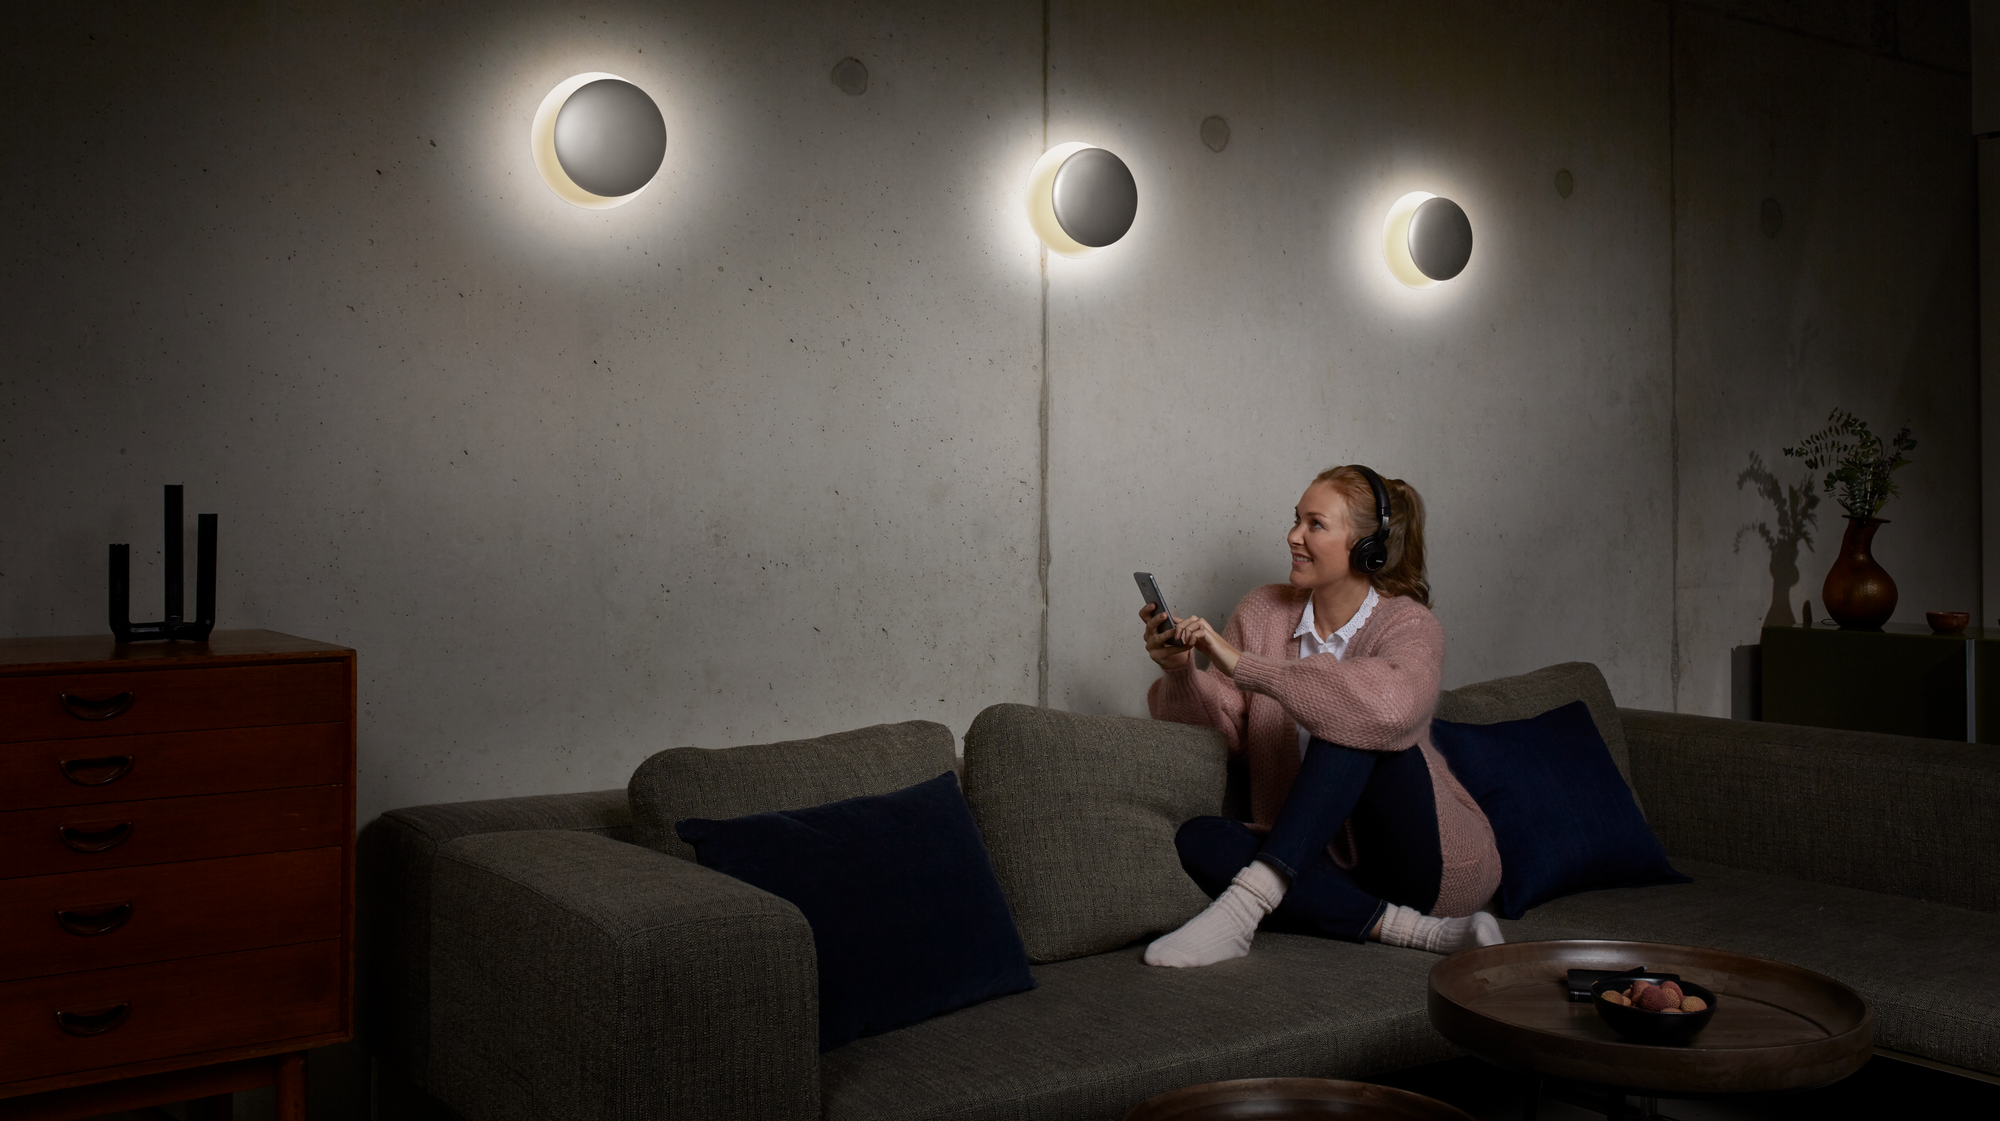 ntelligentes Lichtmanagement - Steuere deine Beleuchtung mit Smart Home Lichtsteuerung. Einfache Installation, komfortable Bedienung, maximale Effizienz. Jetzt online kaufen.